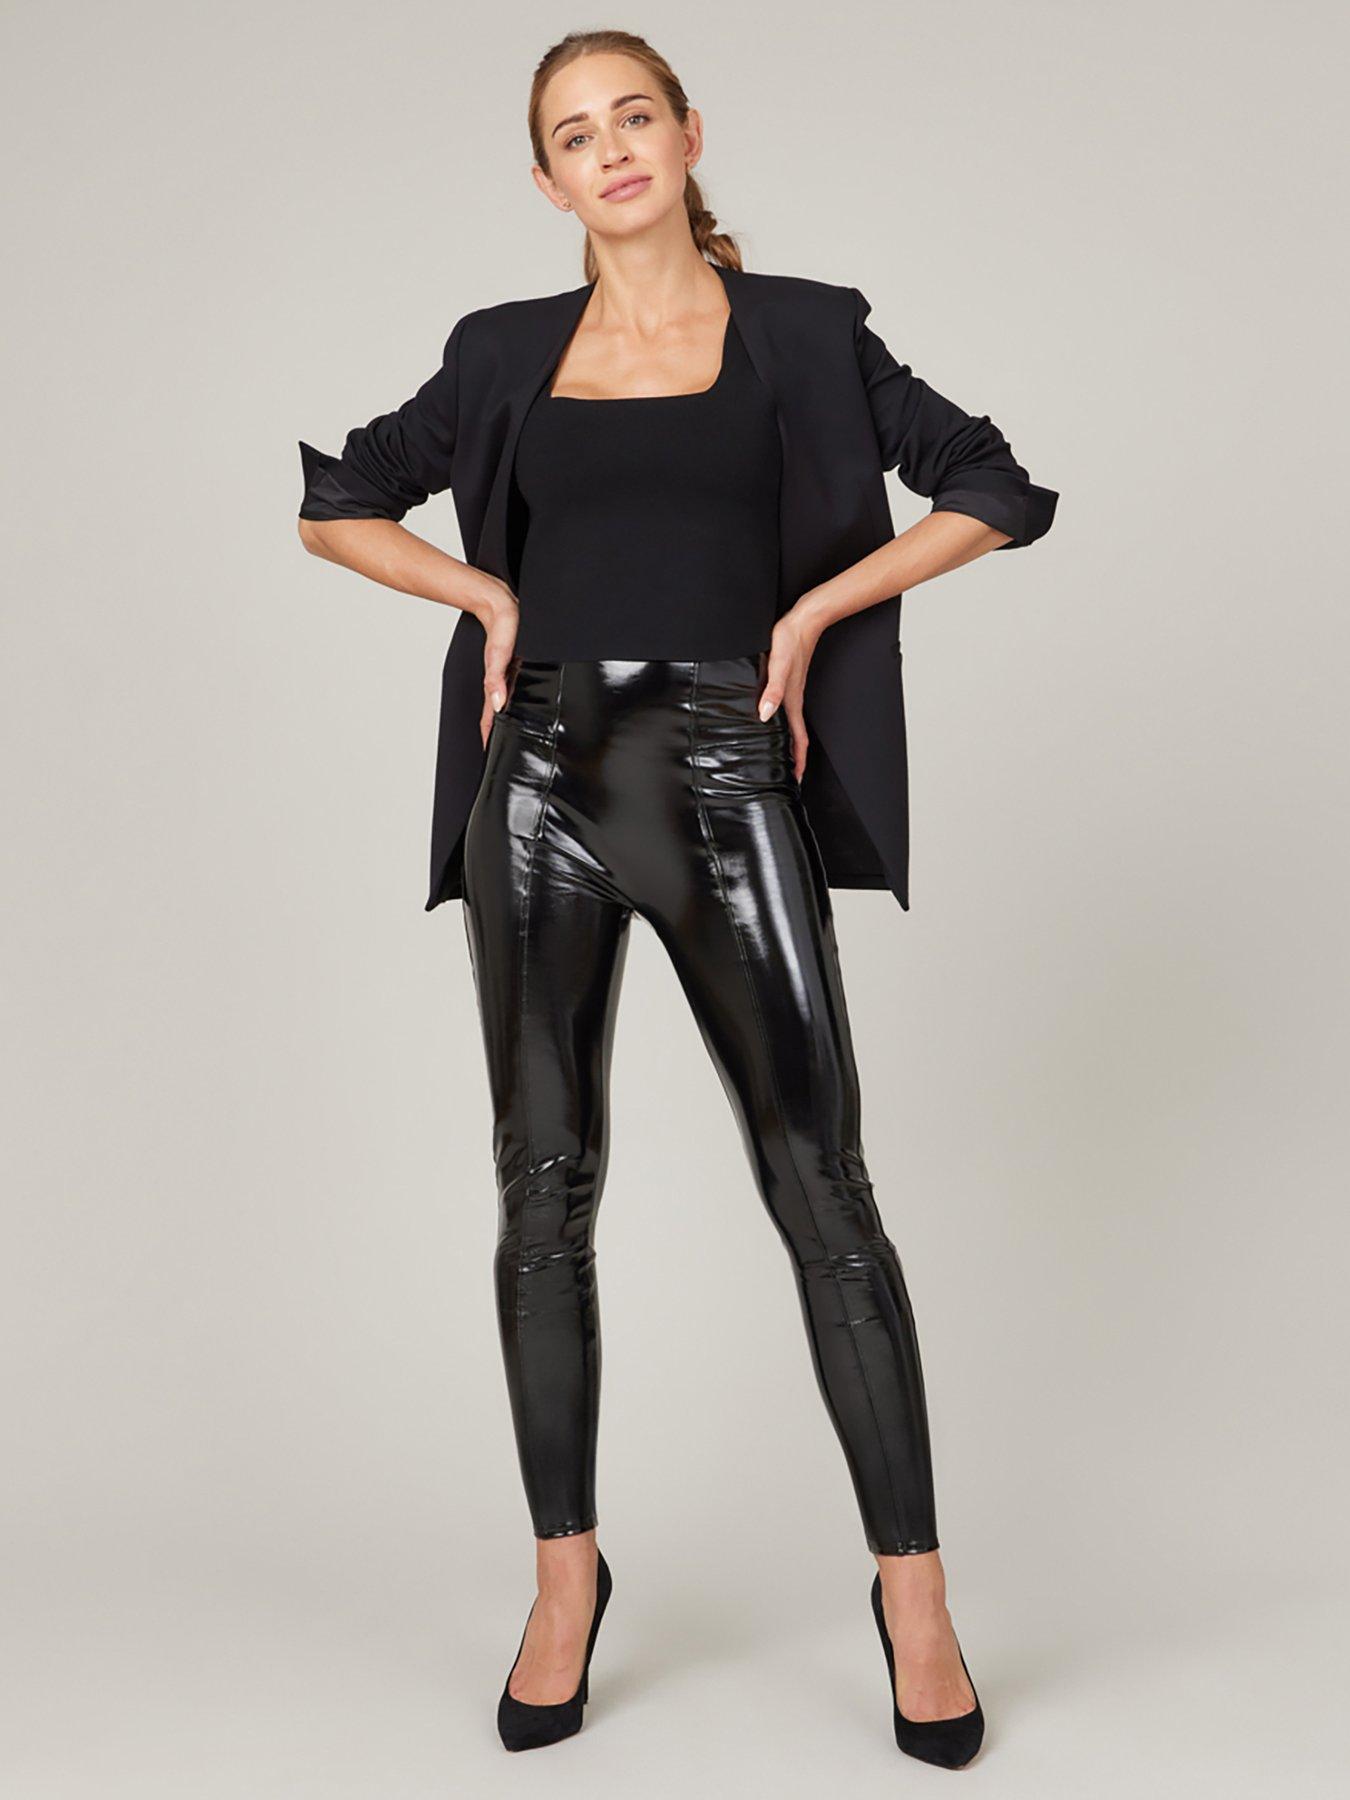 New Look Black Leather-Look Ponte Leggings